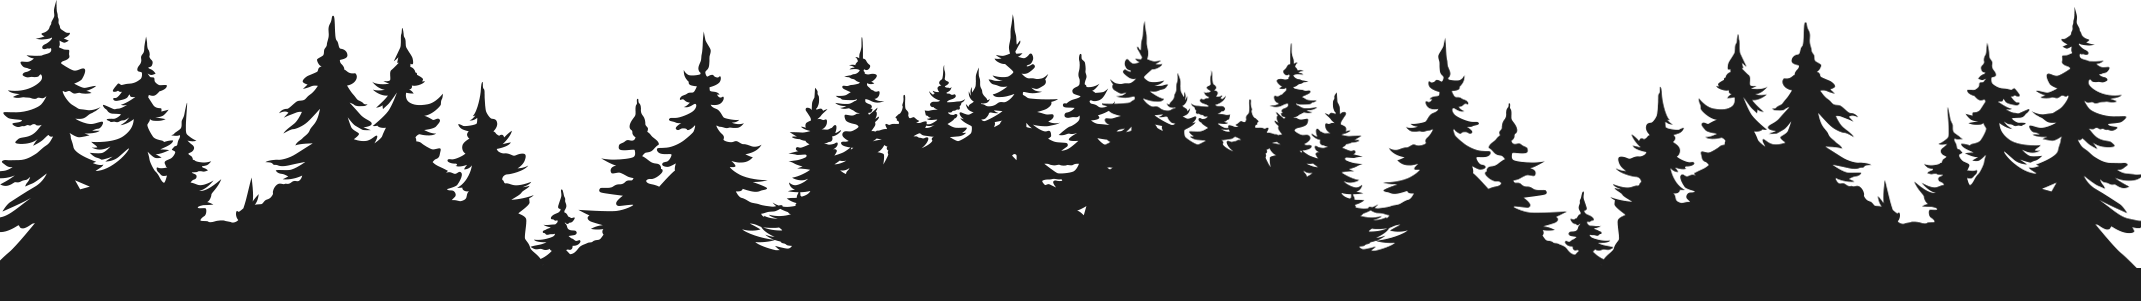 Obrazek czarne drzewa w lesie